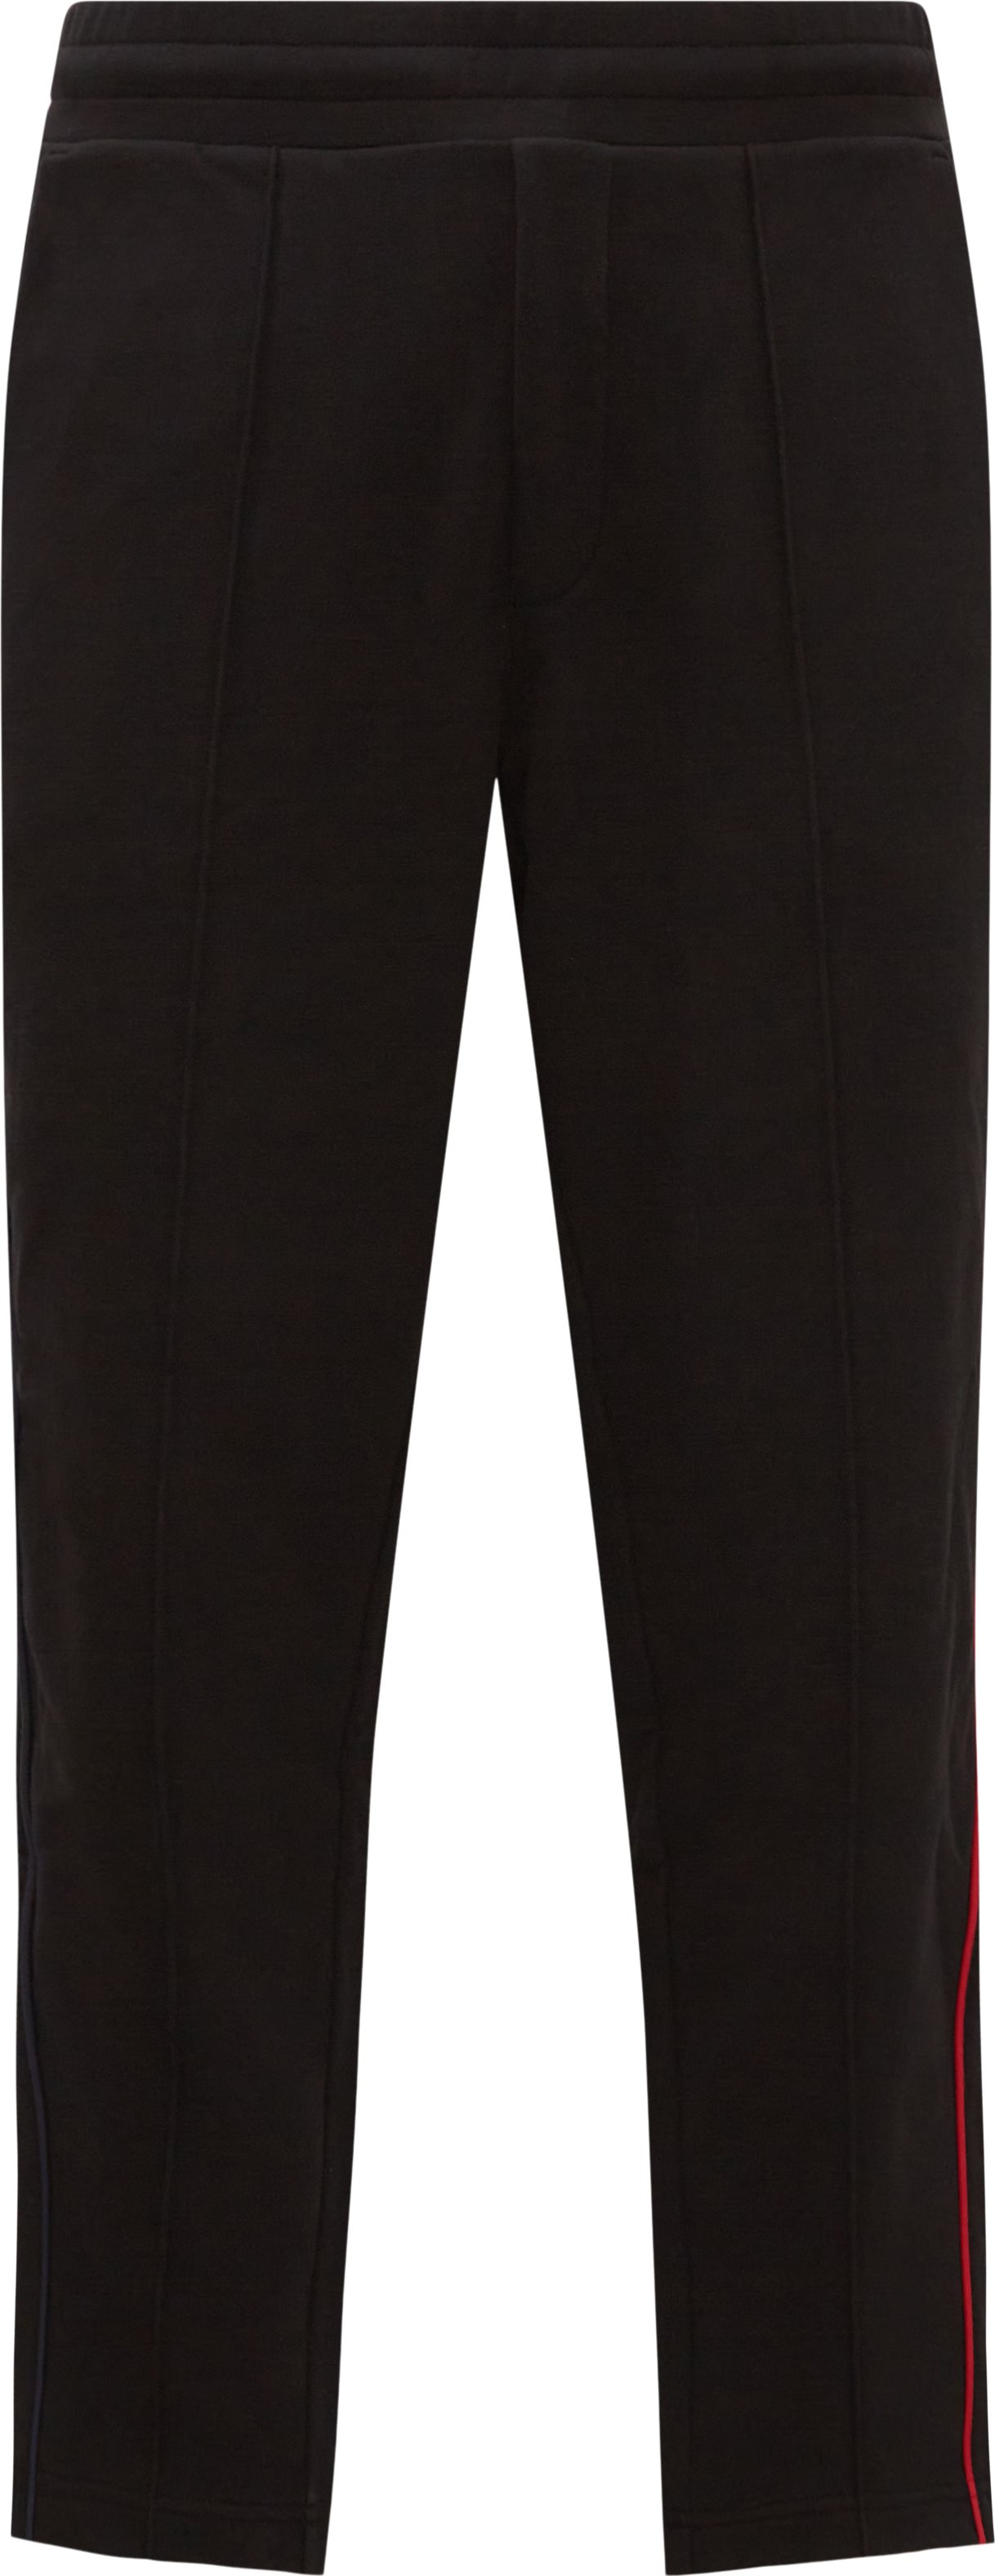 Moncler Trousers 8H00007 89A1B Black